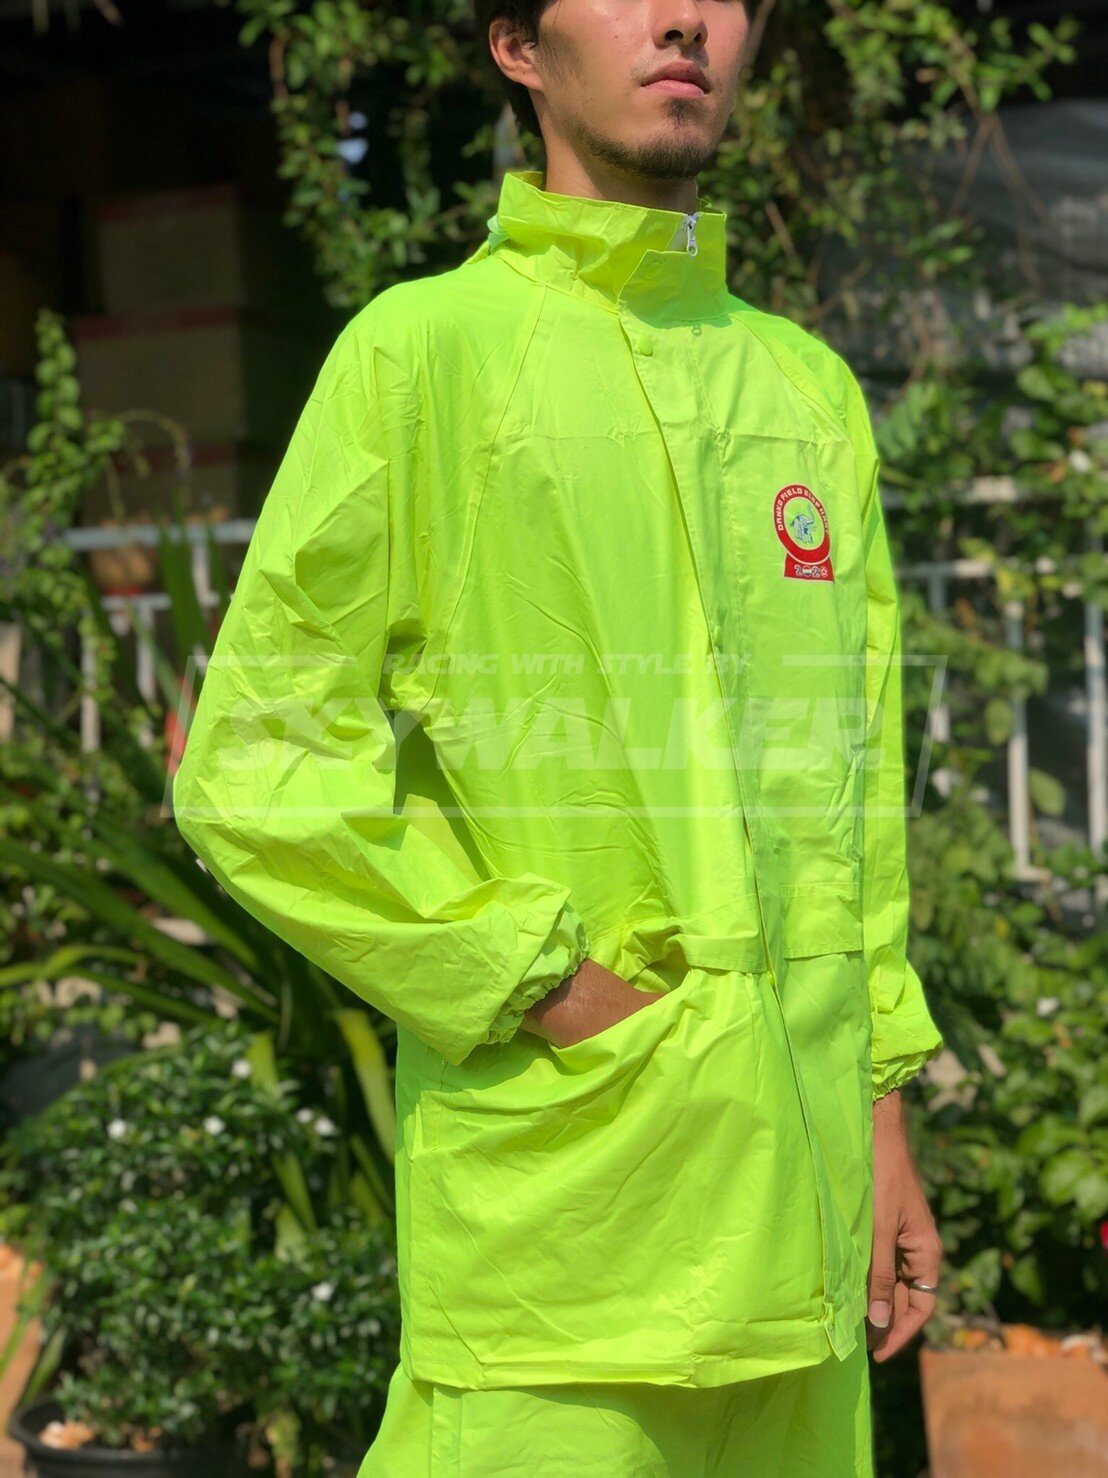 เสื้อกันฝน ชุดกันฝน(DANKO) ตราช้าง เสื้อ+กางเกงอย่างดี ส้ม น้ำเงิน เขียว เขียวขี้ม้า( ณเดชSKYWALKER )